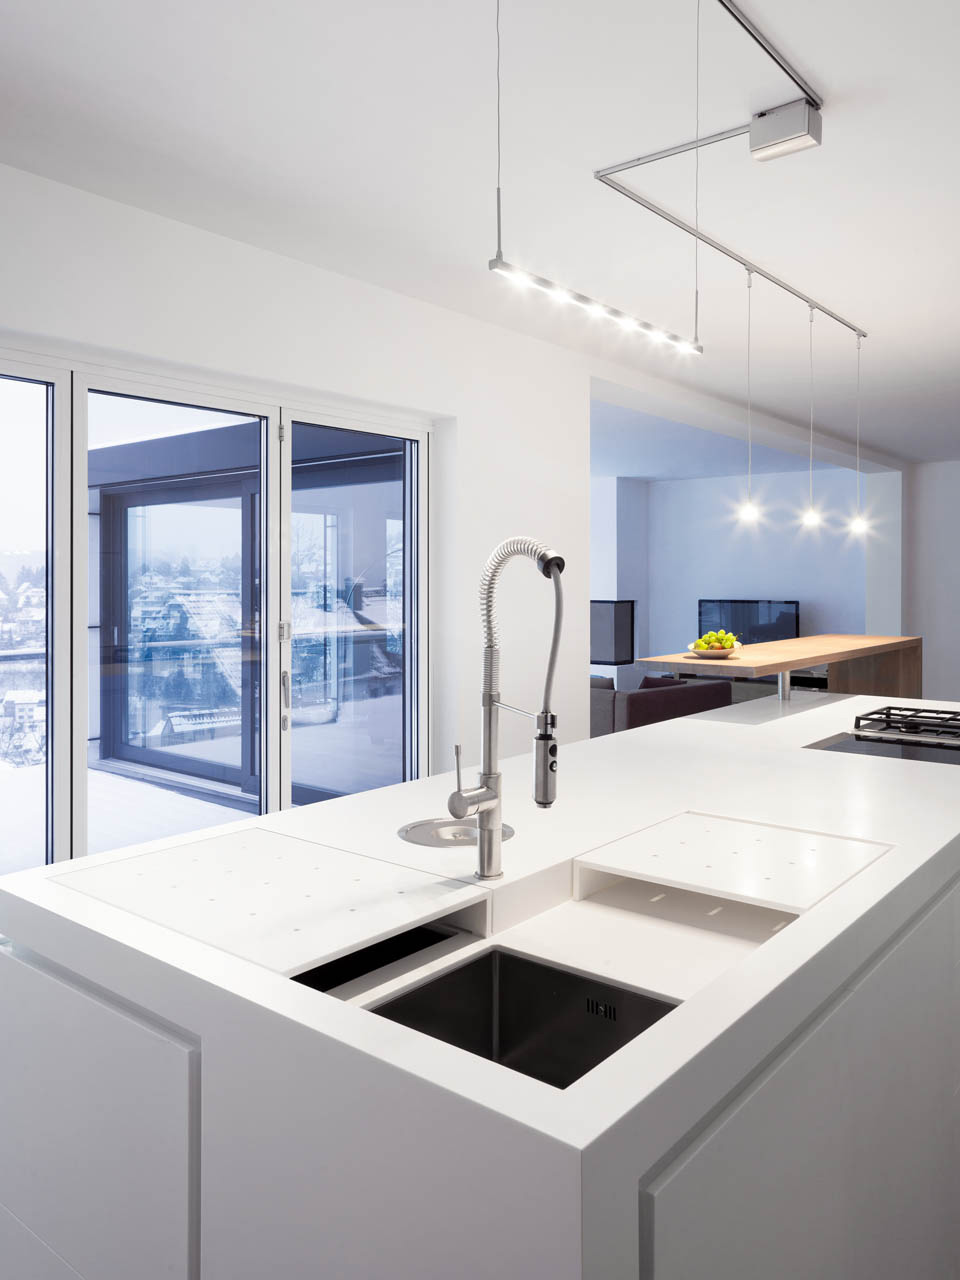 plan 3 kuchyně / Moderné minimalistické bydlenie / Homogénny dizajn